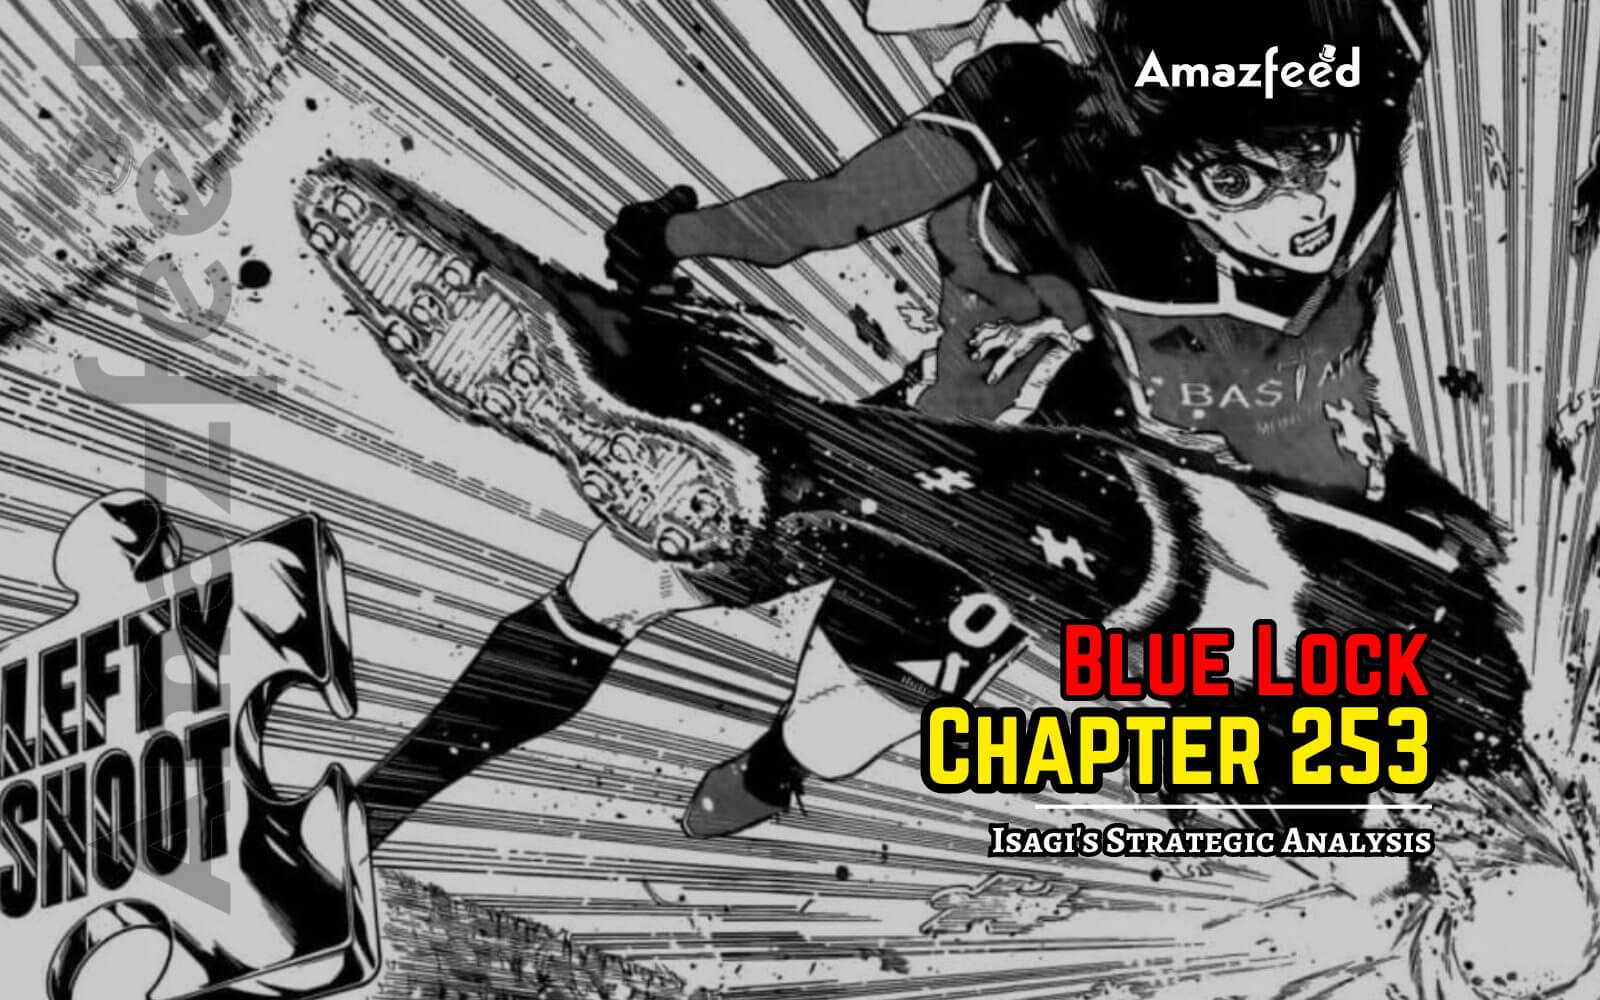 Blue Lock Chapter 253 Spoiler Revealed